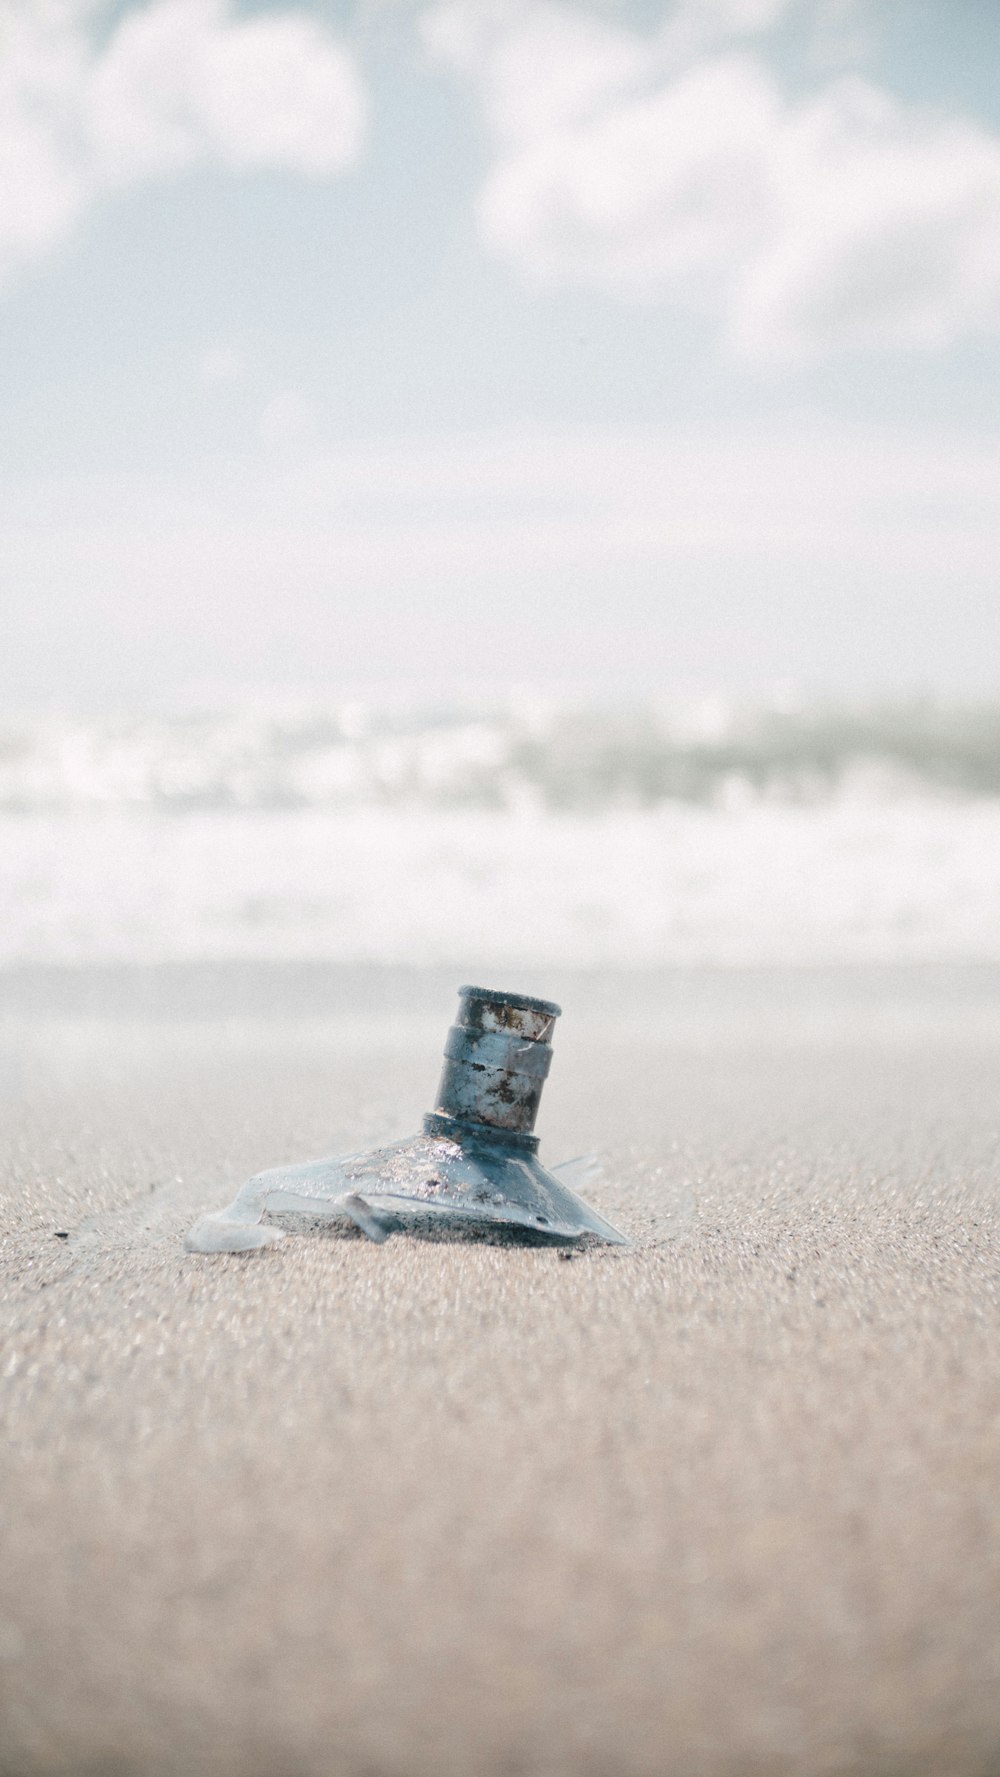 eine zerbrochene Glasflasche, die auf einem Sandstrand sitzt